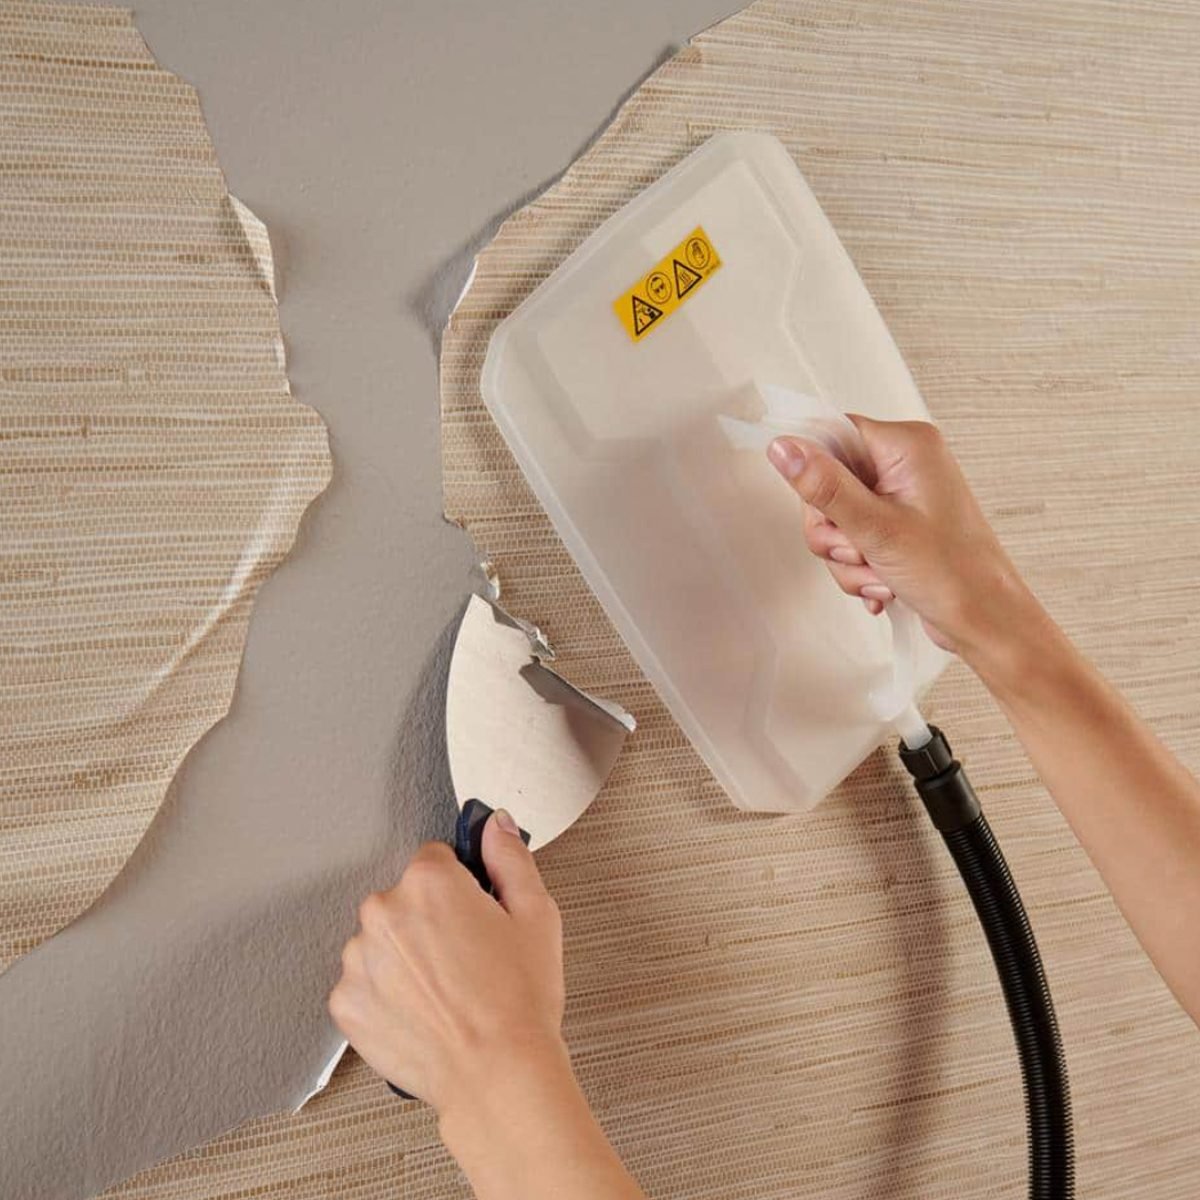 9 Best Wallpaper Removers